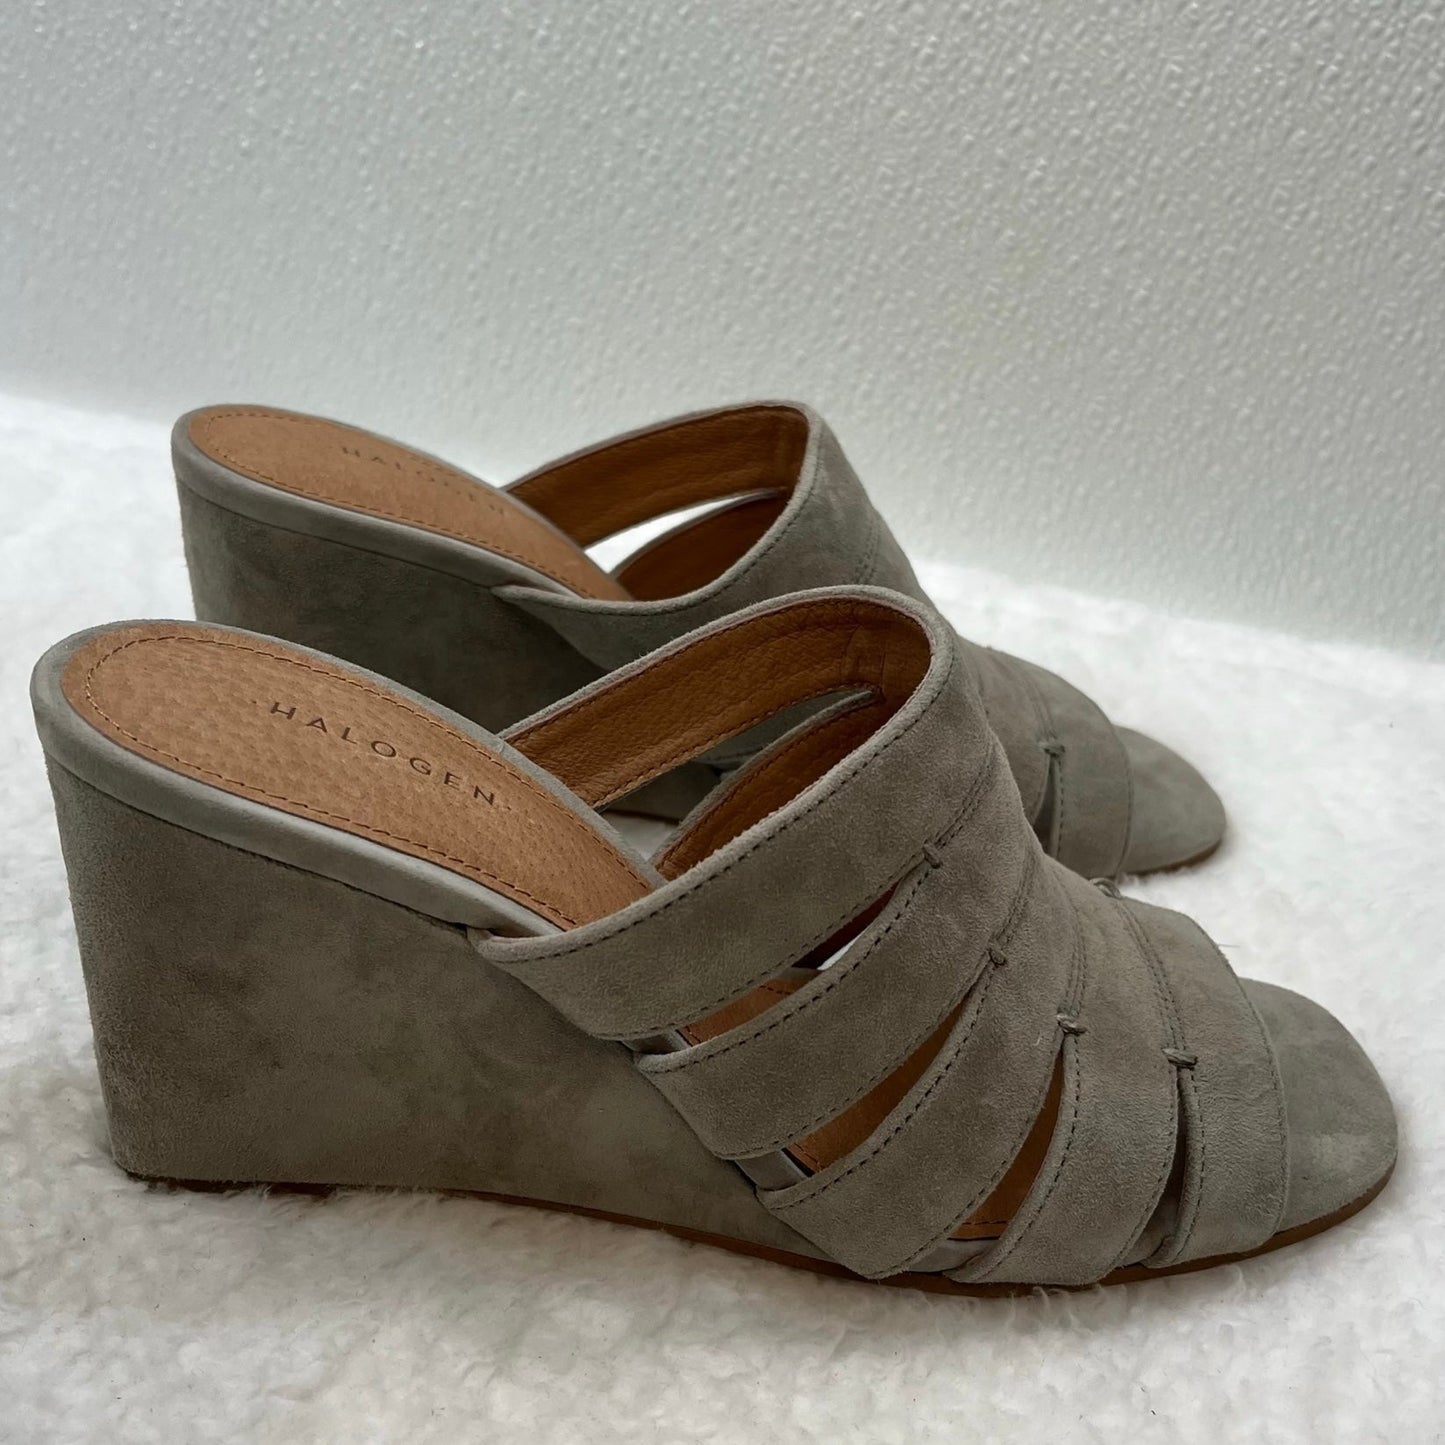 Grey Sandals Heels Block Halogen, Size 6.5